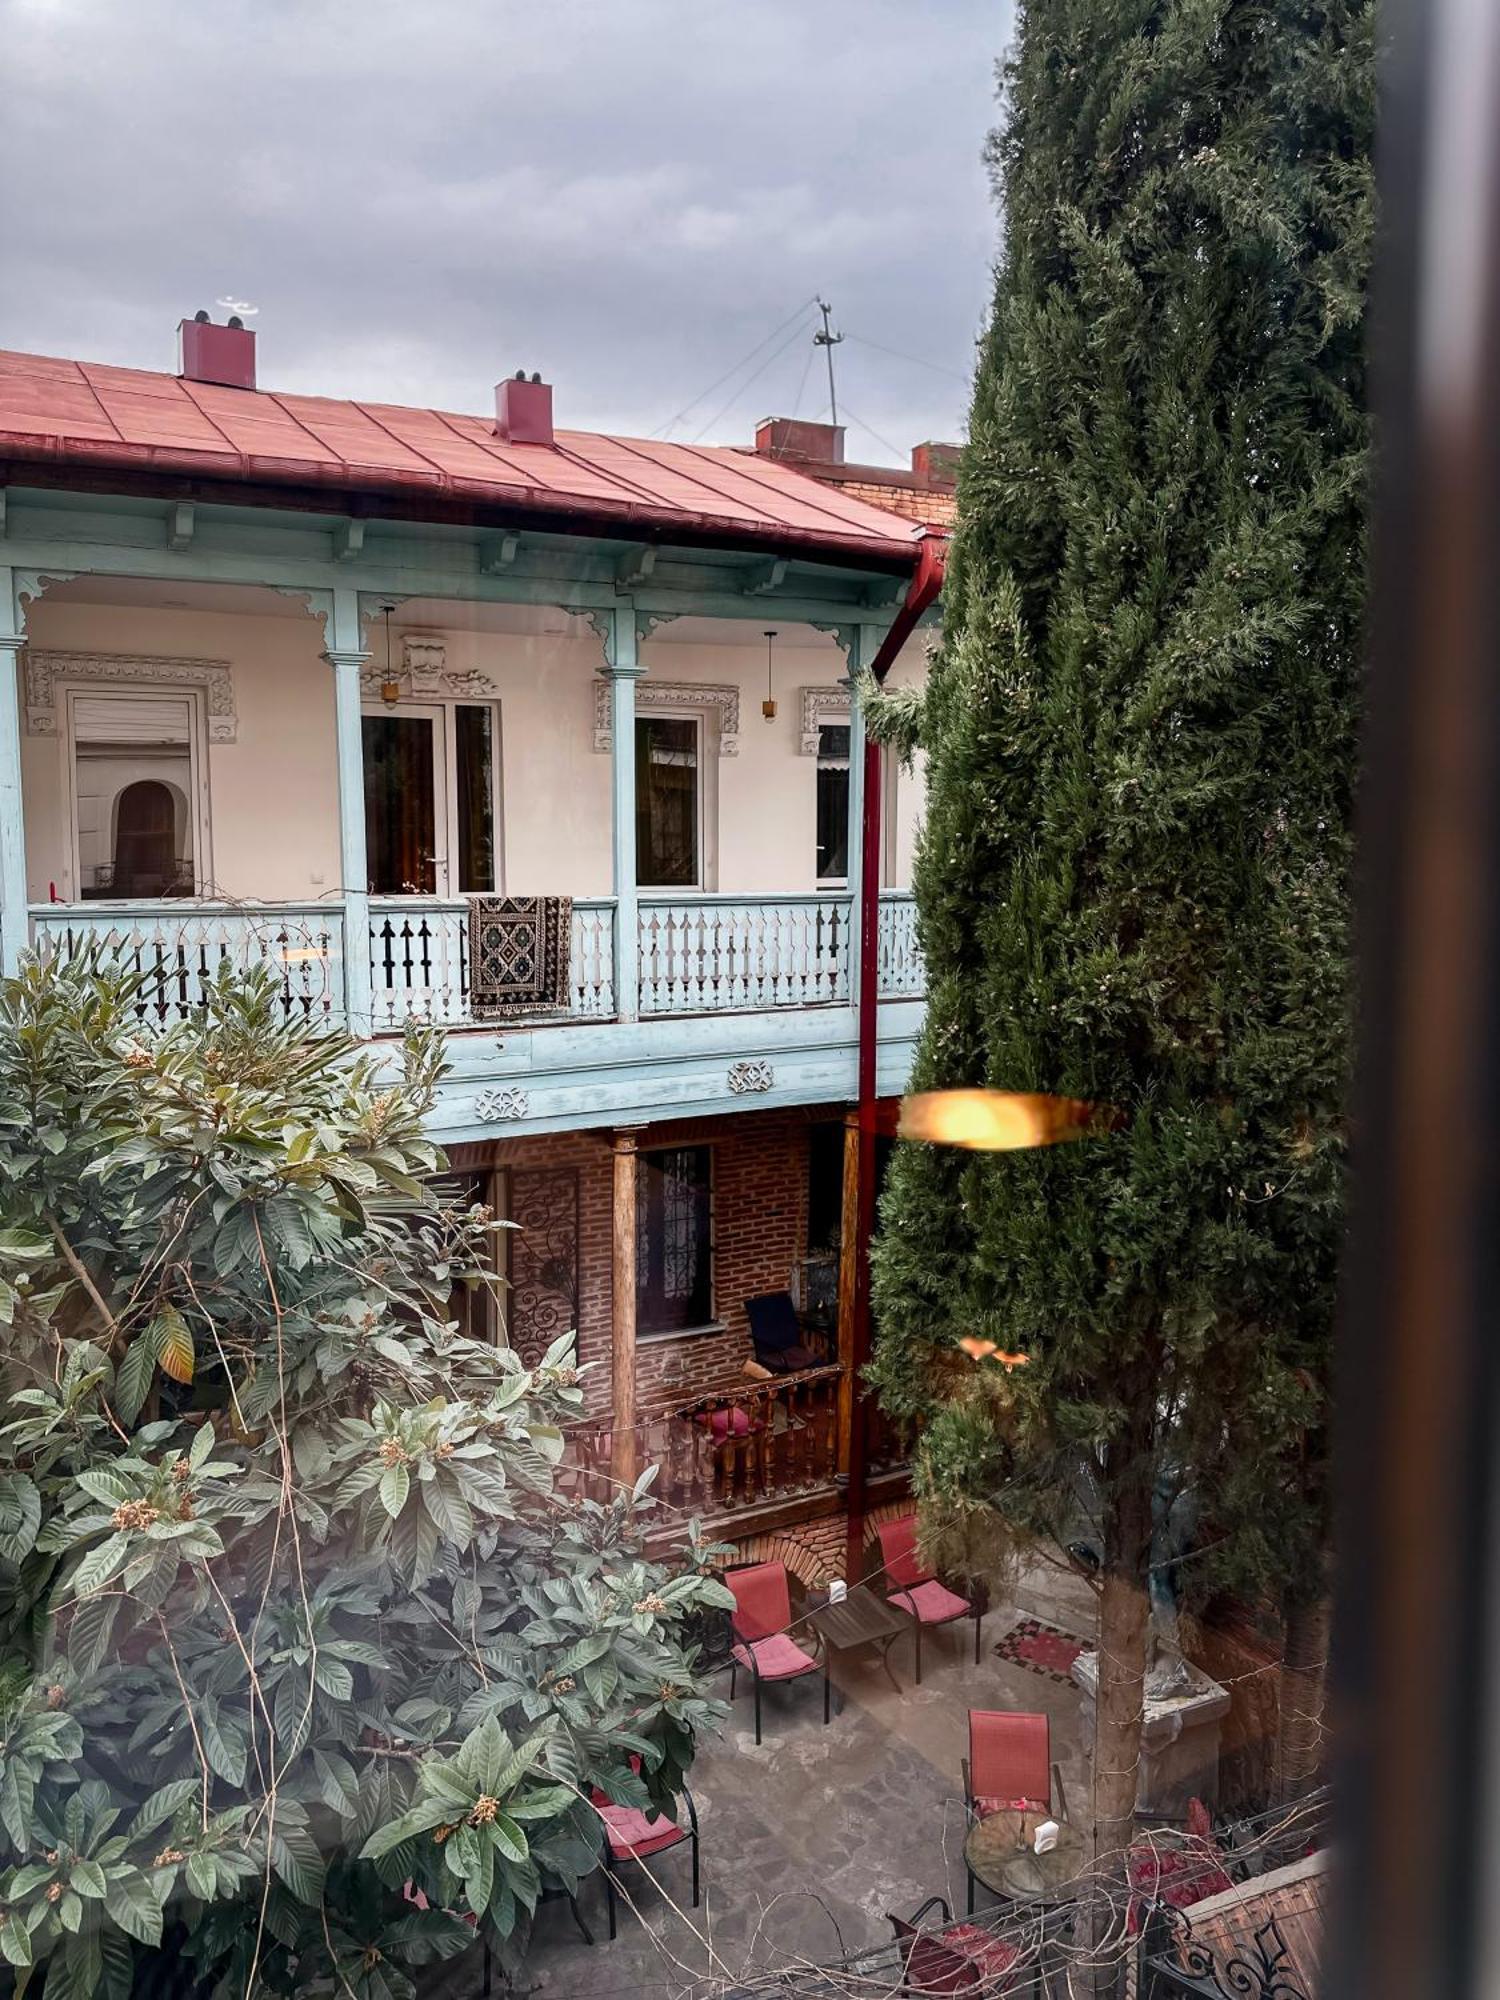 Silver 39 Corner Hotel Tiflis Dış mekan fotoğraf